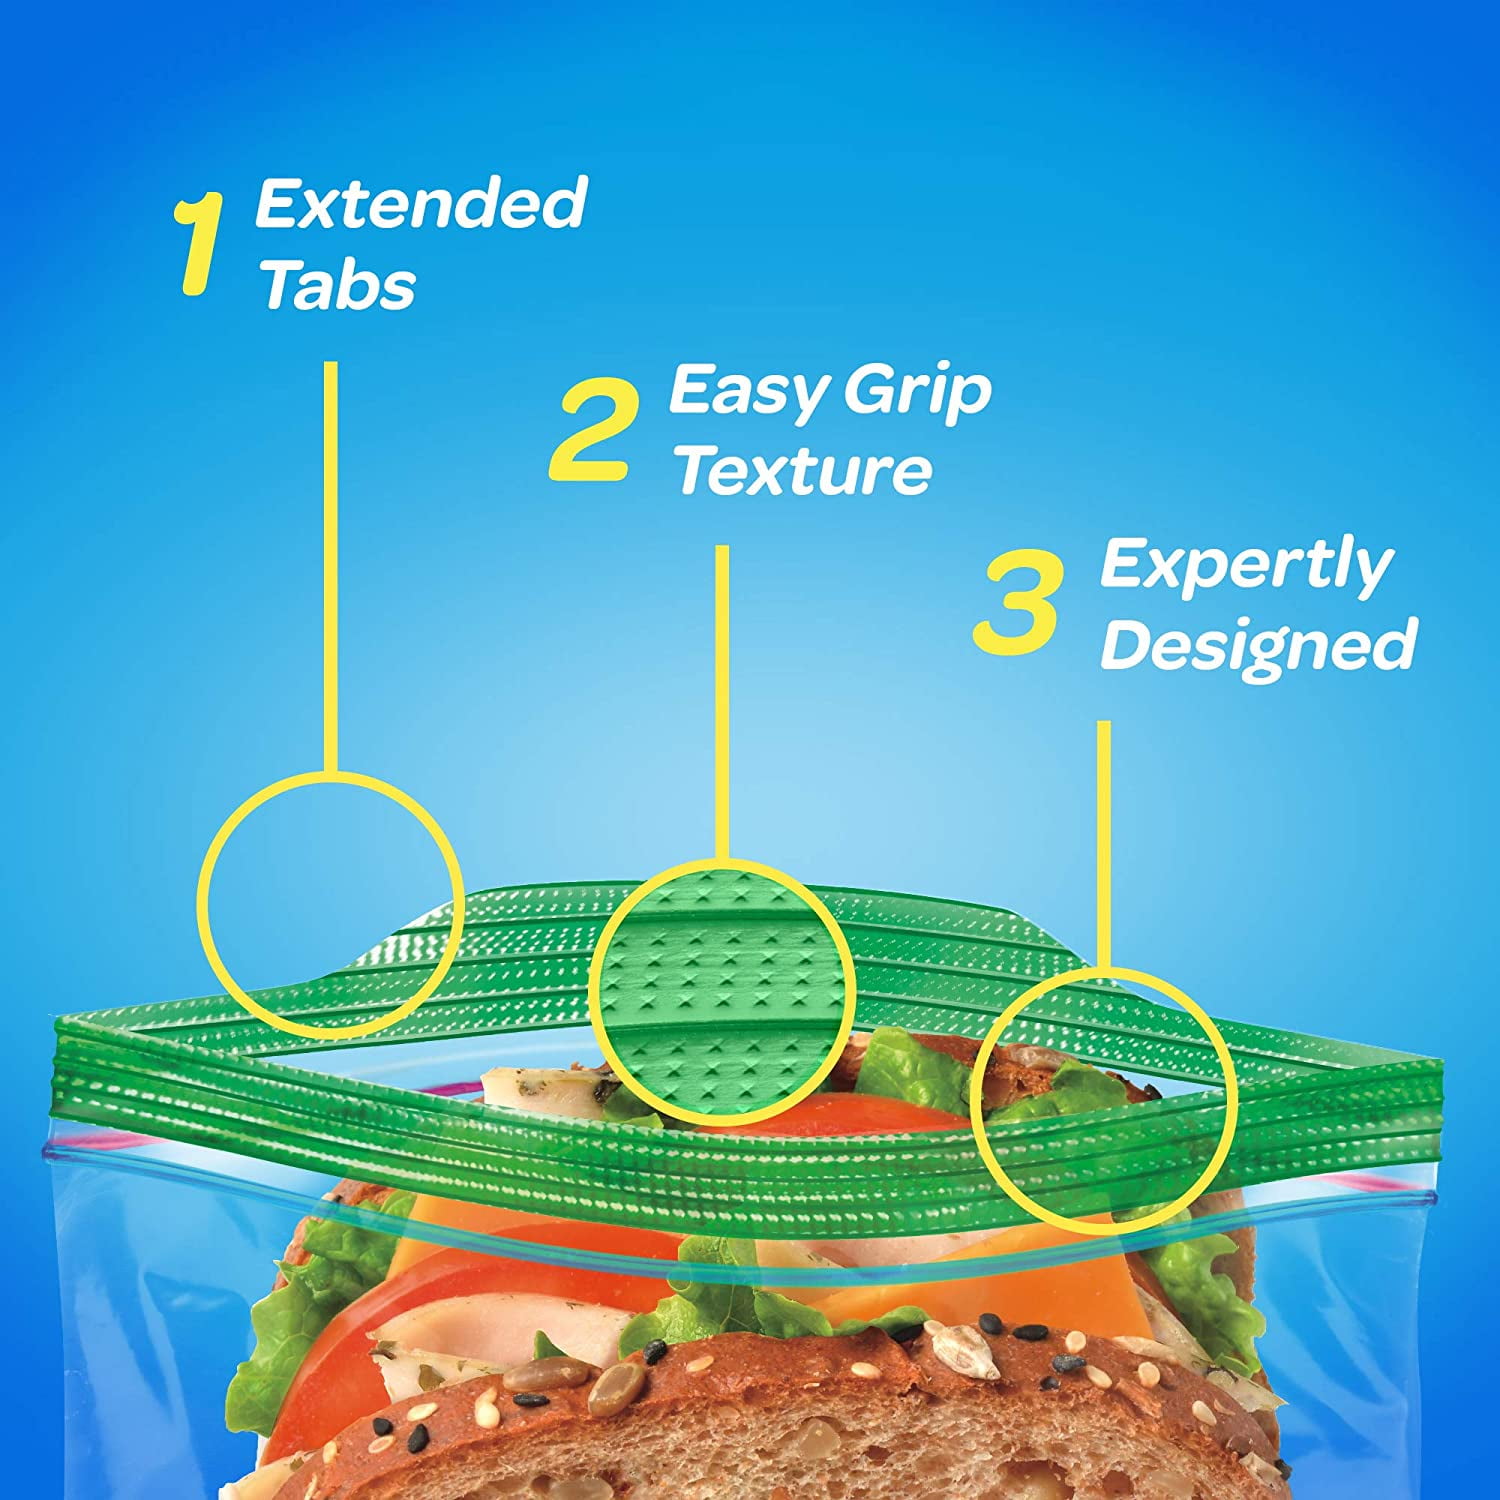 Ziploc - Ziploc, Sandwich Bags, Smart Zip Vacuum Seal (90 count)